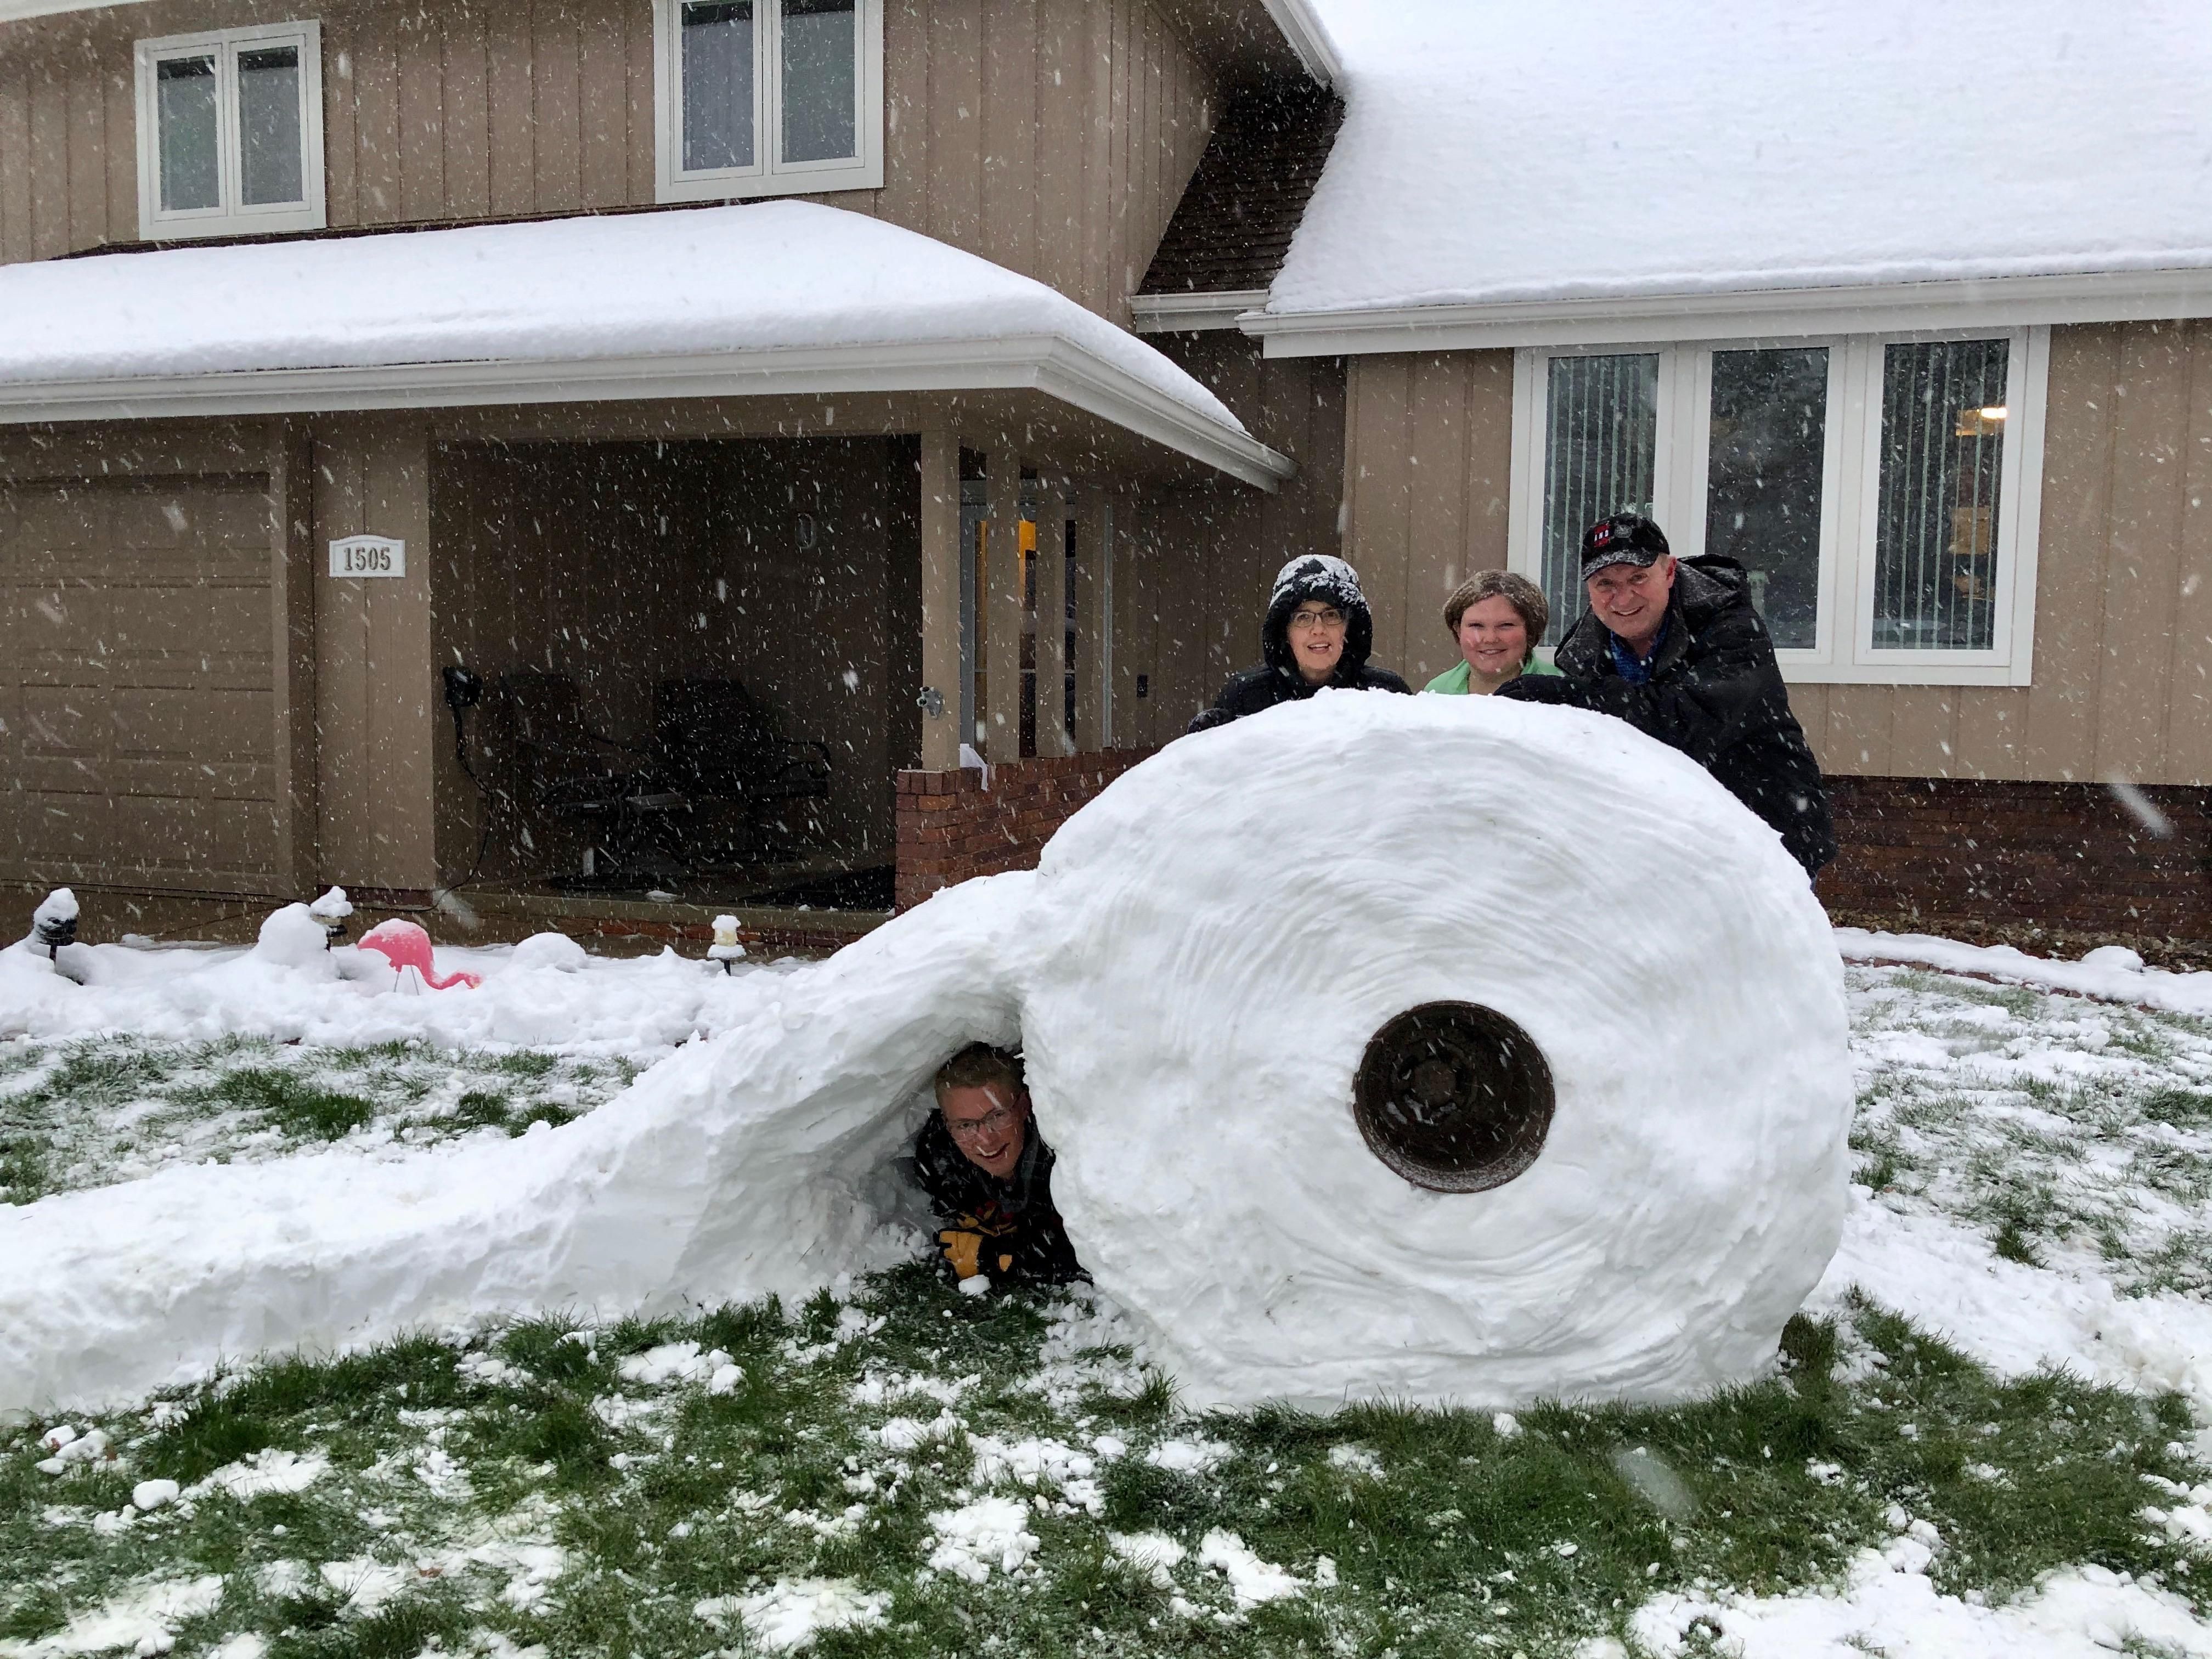 It snowed a mega-roll!